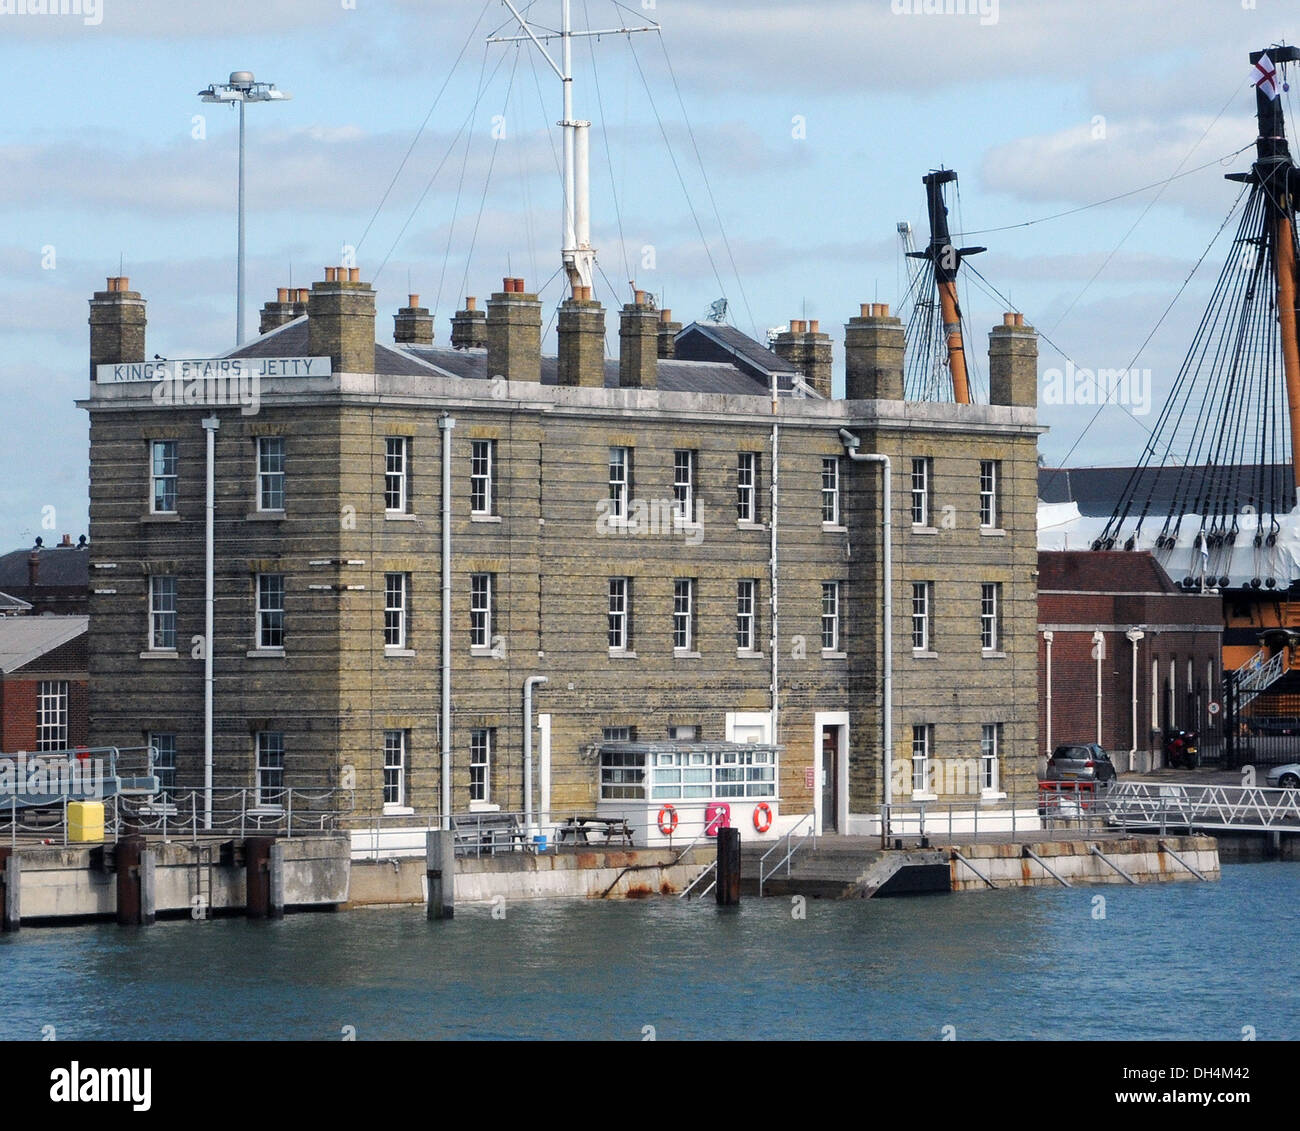 KINGS SCALE DA DOVE BUSTER Crabb è stato visto per l ultima volta, Portsmouth base navale. Foto Stock